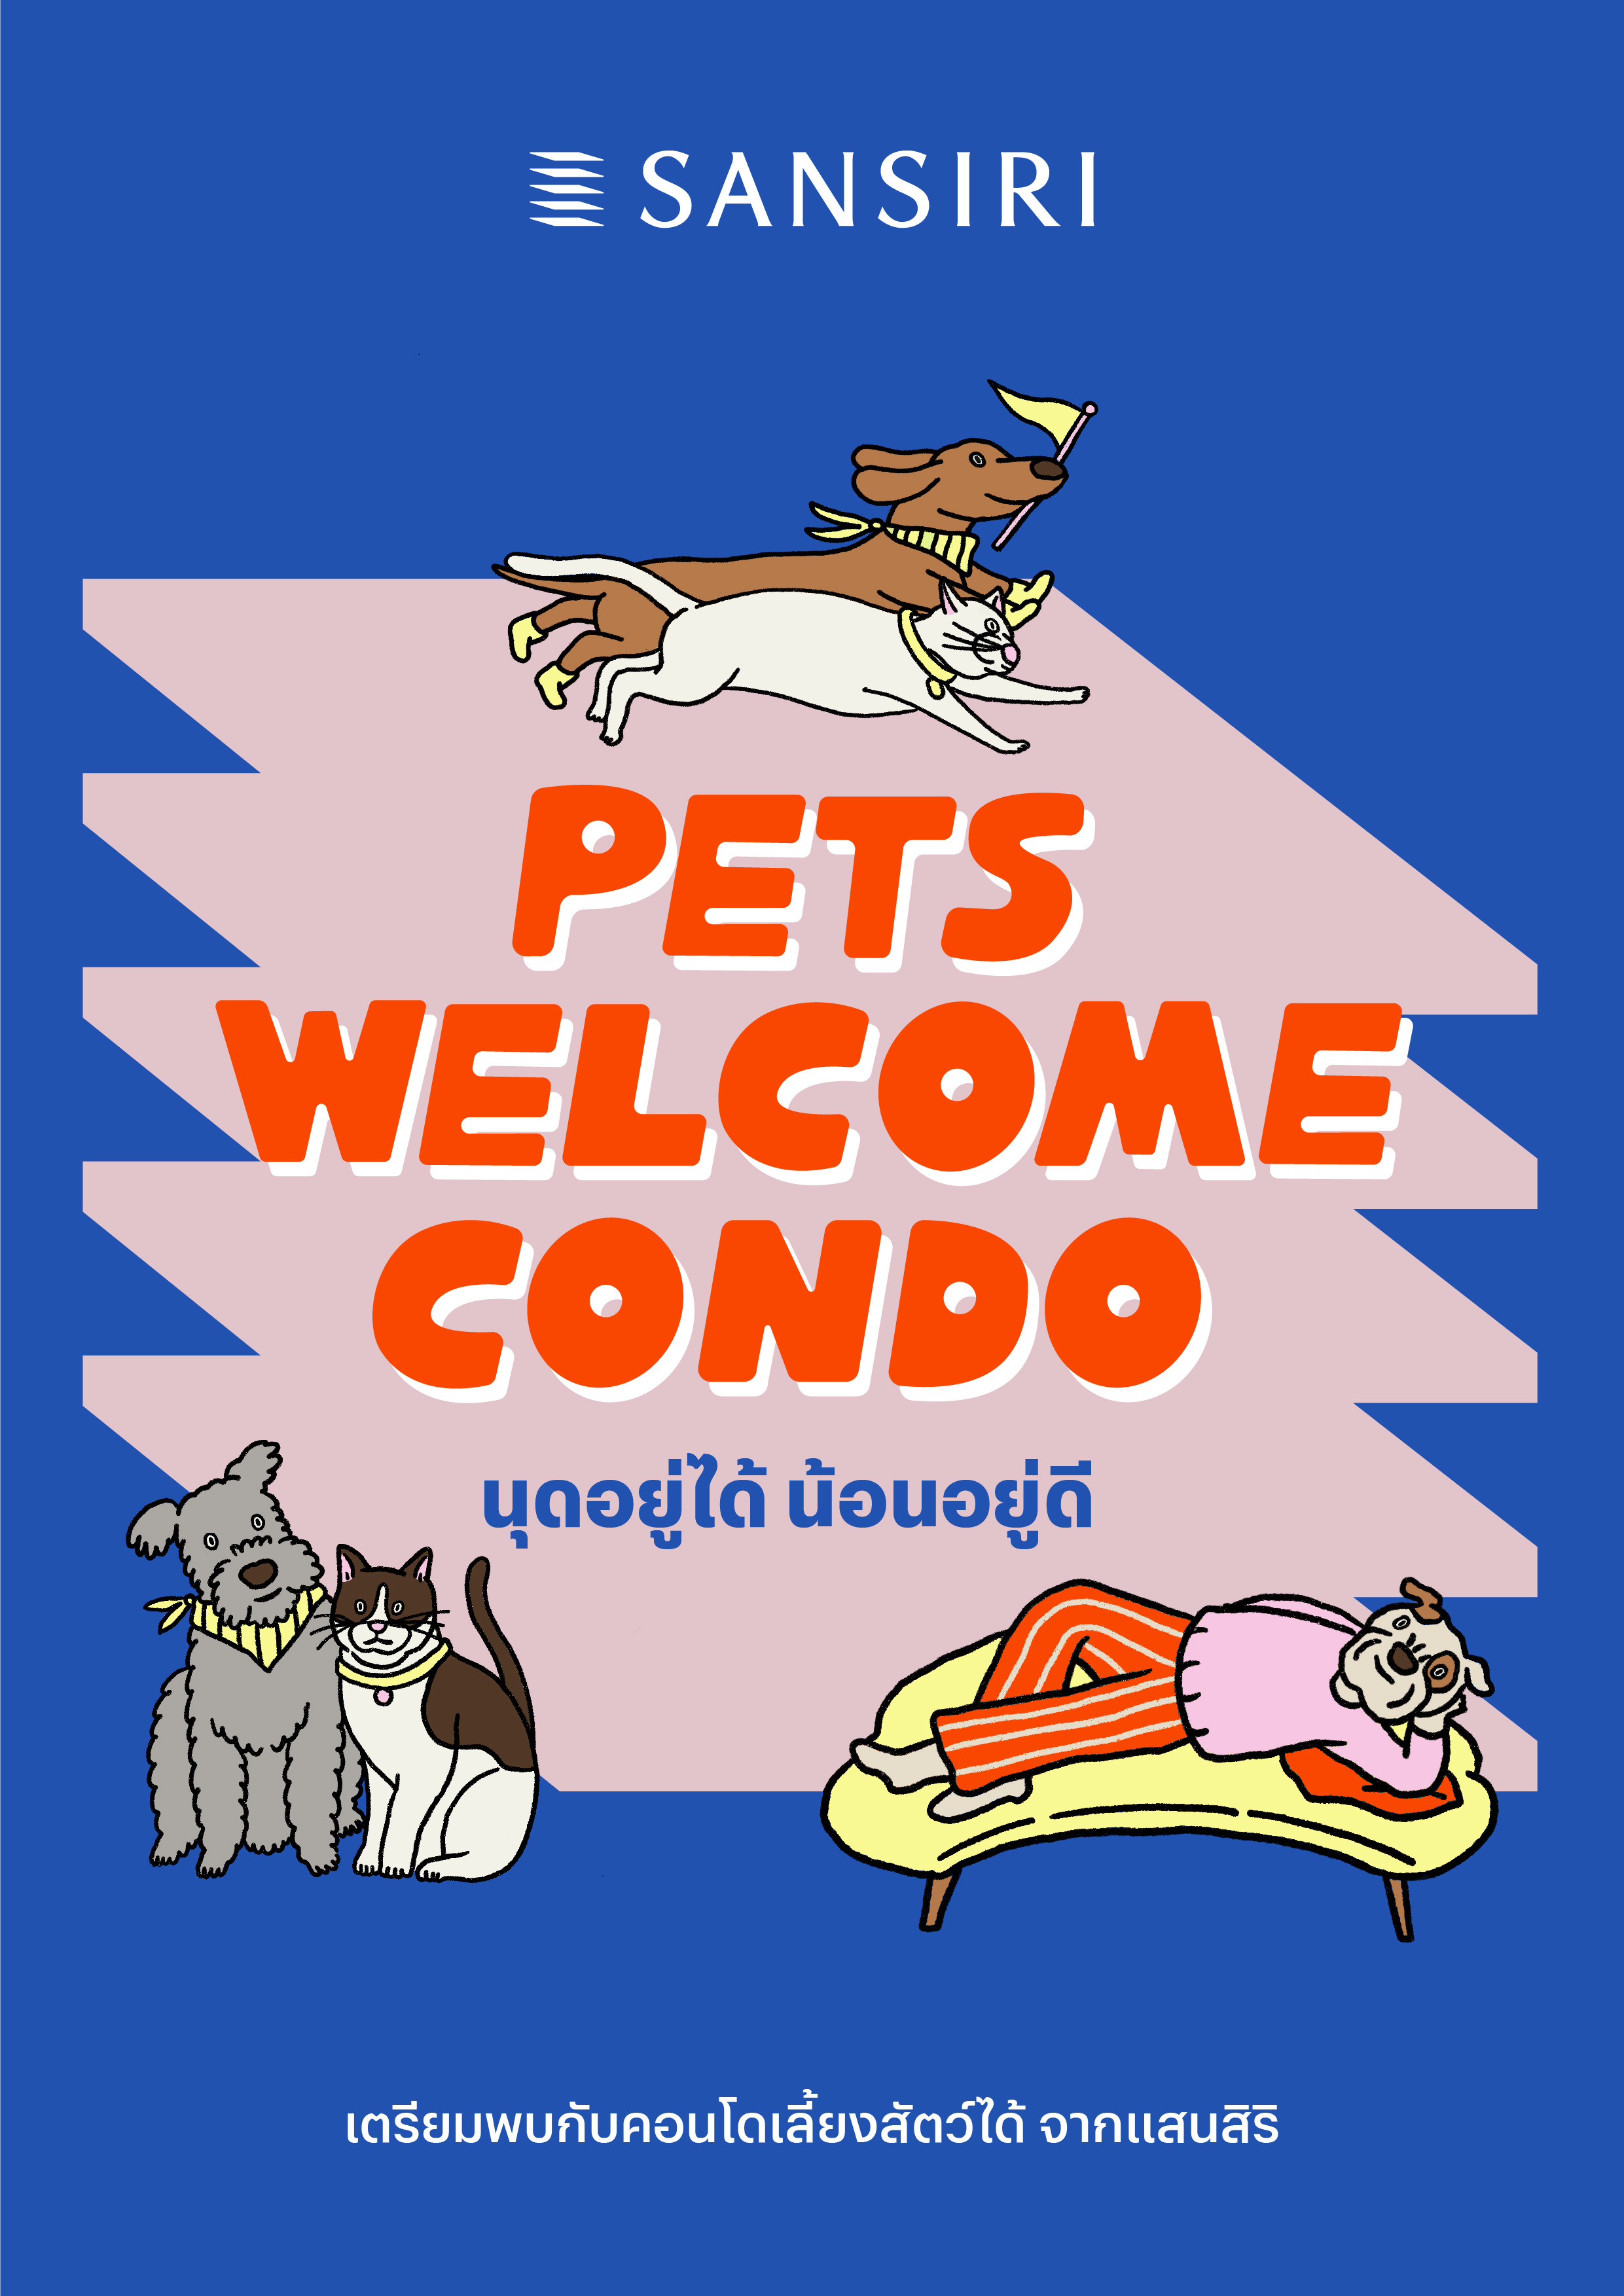 แสนสิริ เปิดตัว “PETS WELCOME CONDO” 5 โครงการใหม่ จ่อคิวเปิดตัวอีกหลายโครงการปี 67